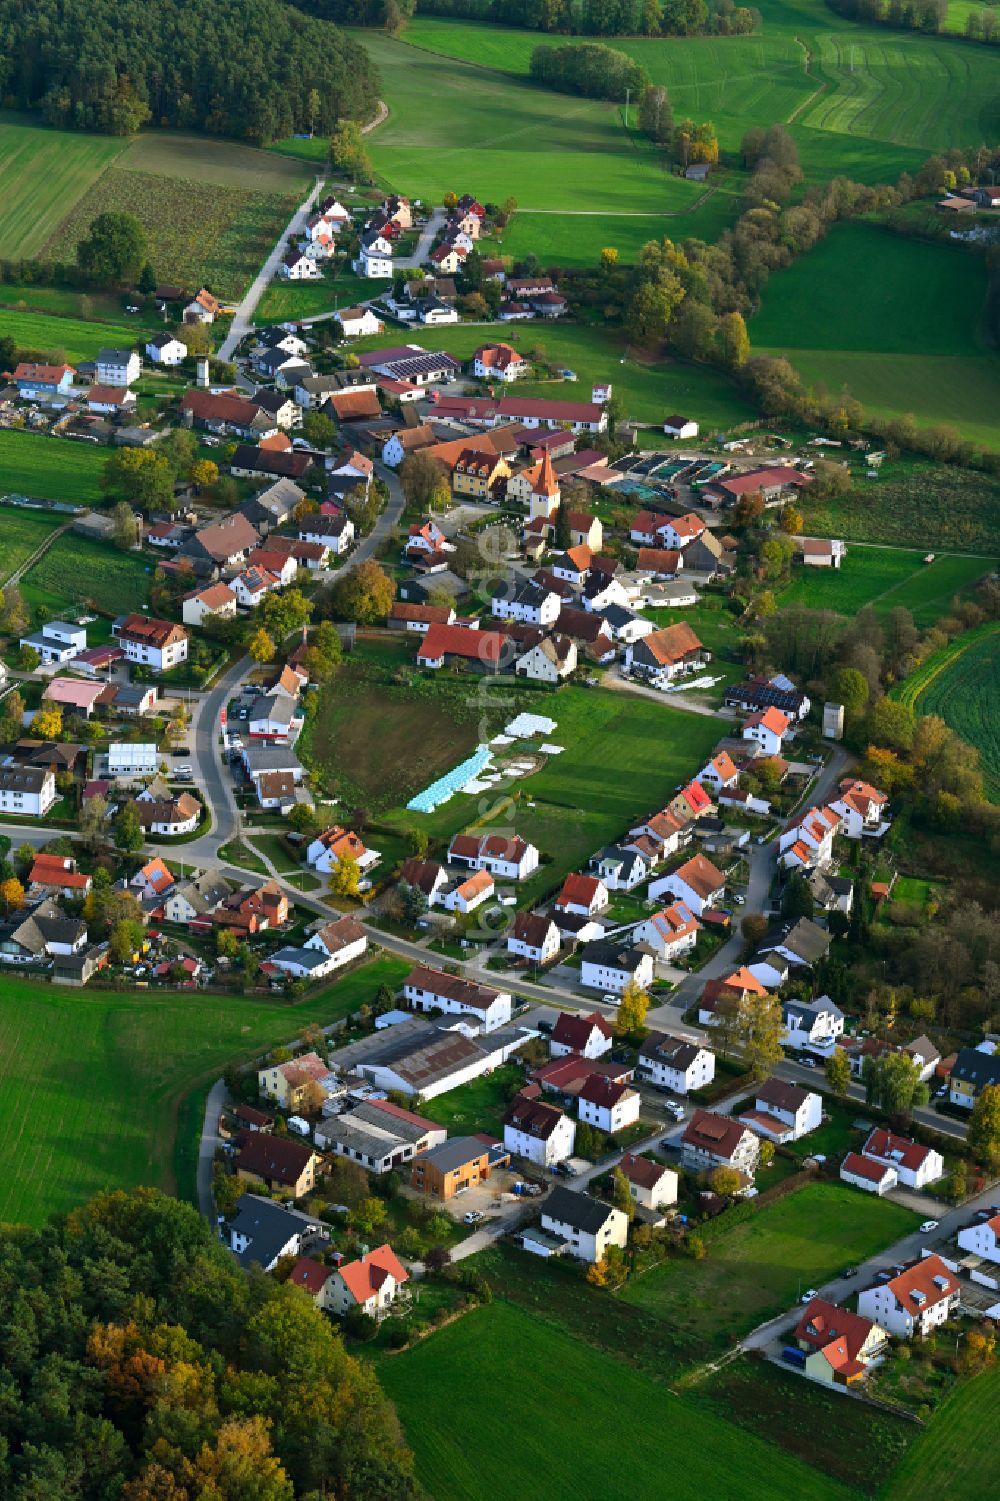 Richtheim von oben - Dorfkern am Feldrand in Richtheim im Bundesland Bayern, Deutschland